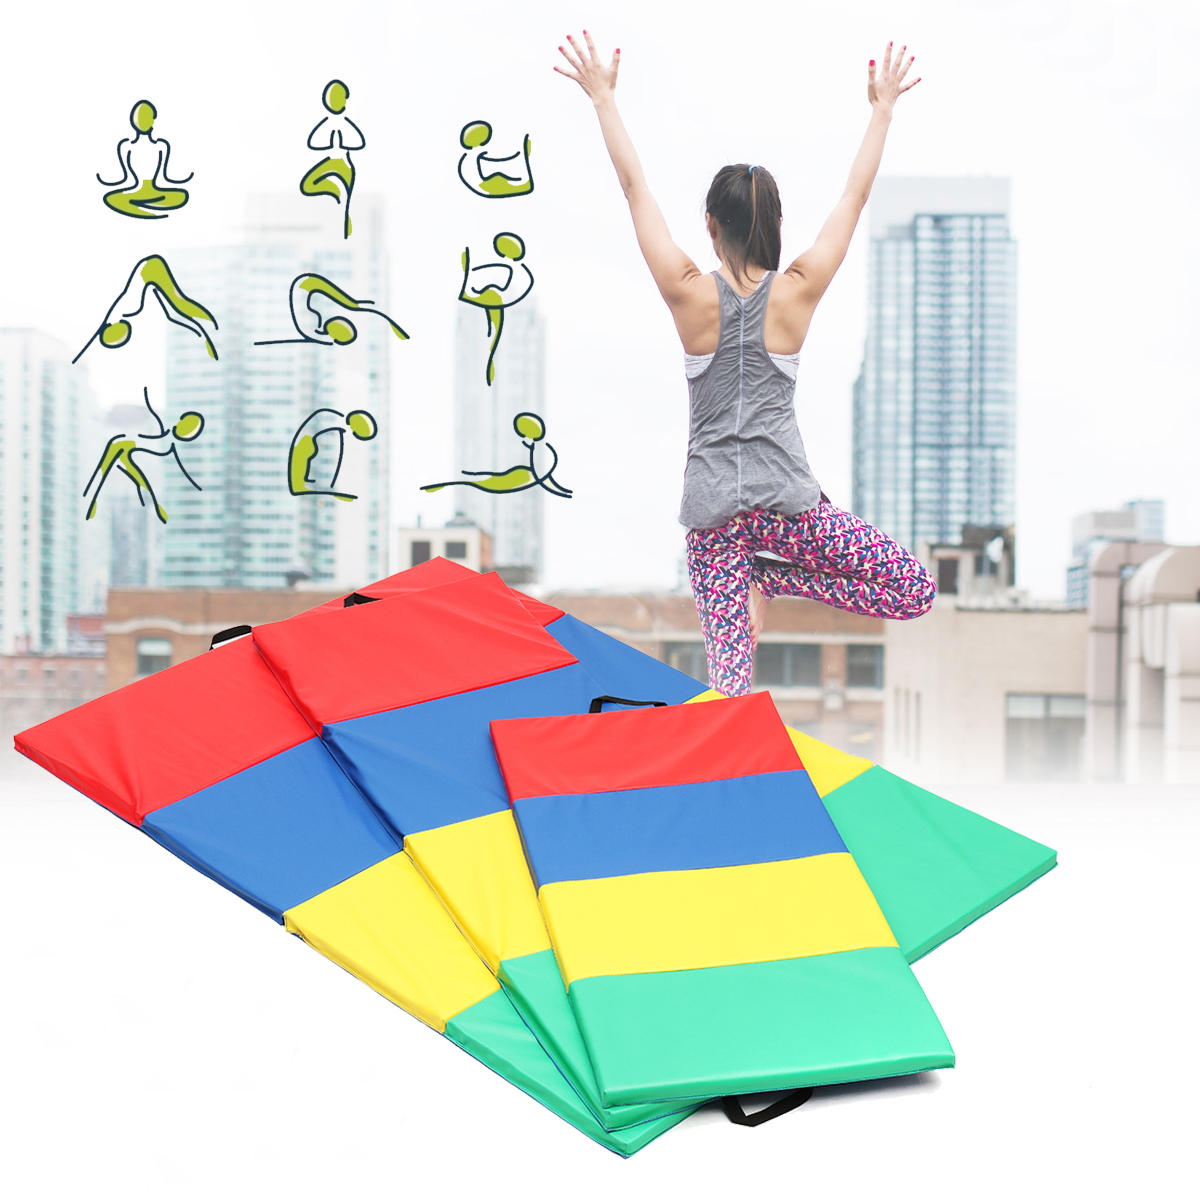 4 складывающихся гимнастических коврика для йоги, упражнений в спортзале, панелей для воздушного трека, пилатеса и лазания